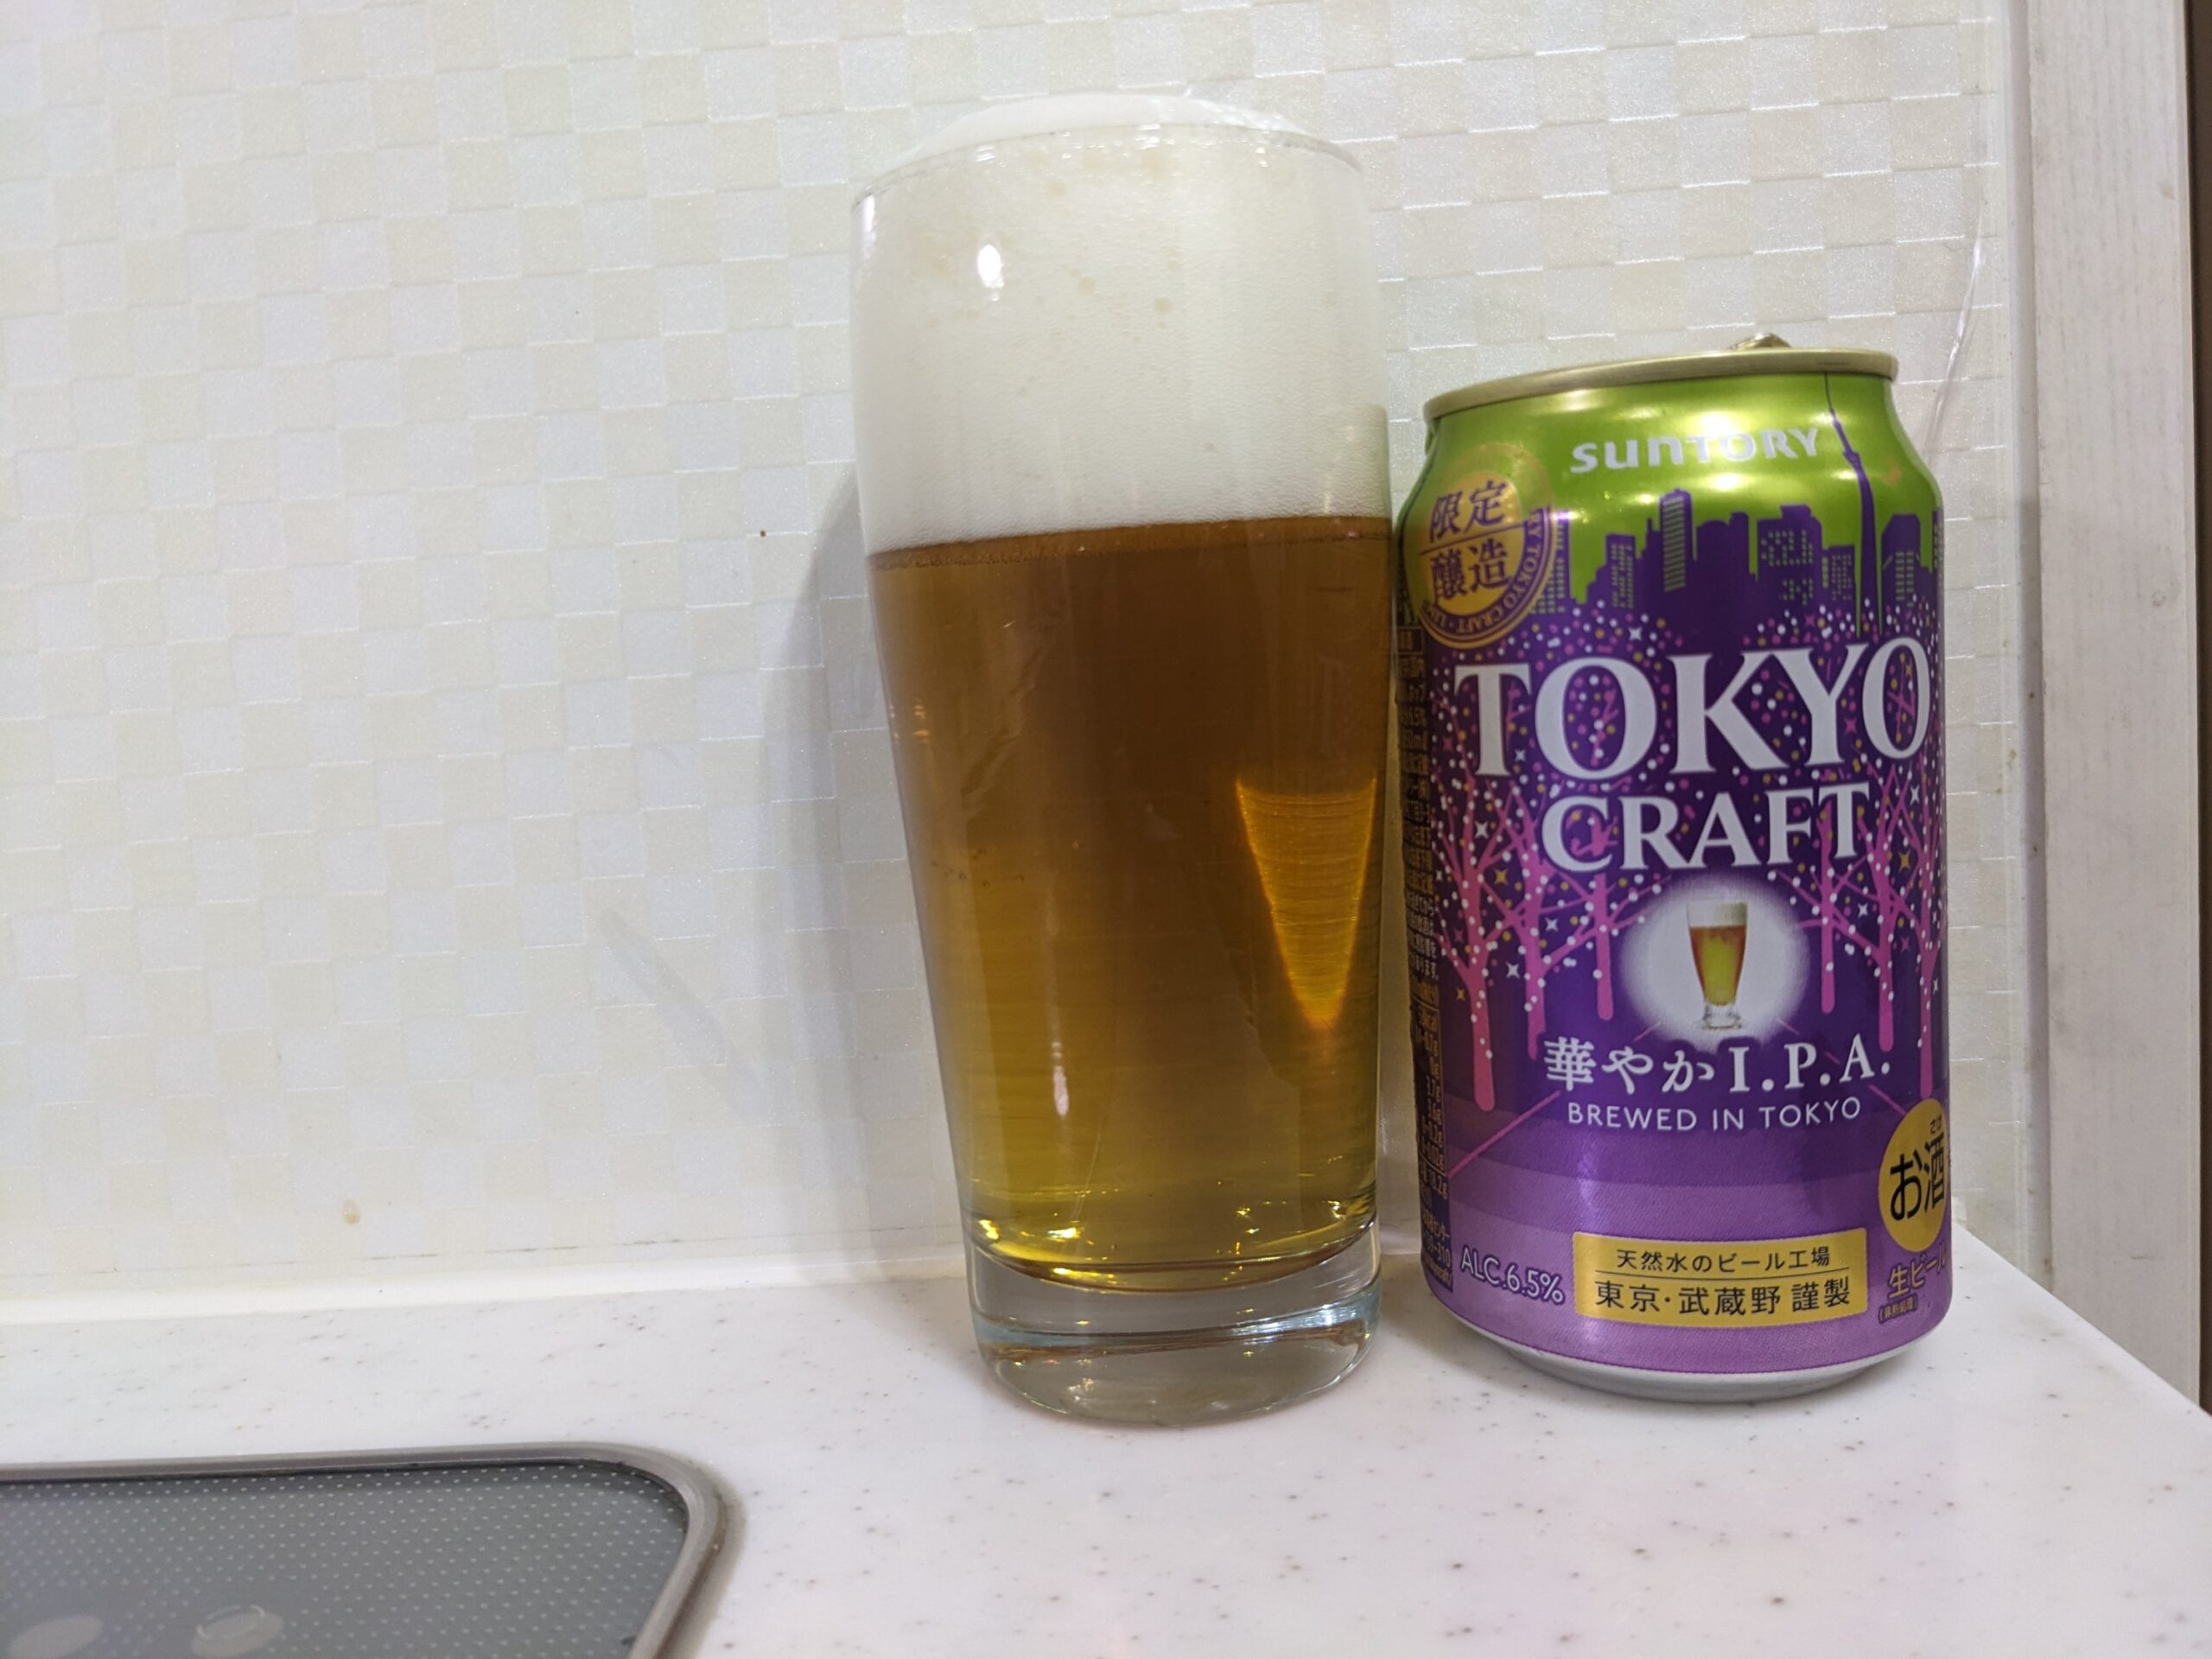 「東京クラフト華やかI.P.A.」が注がれたグラスとその缶